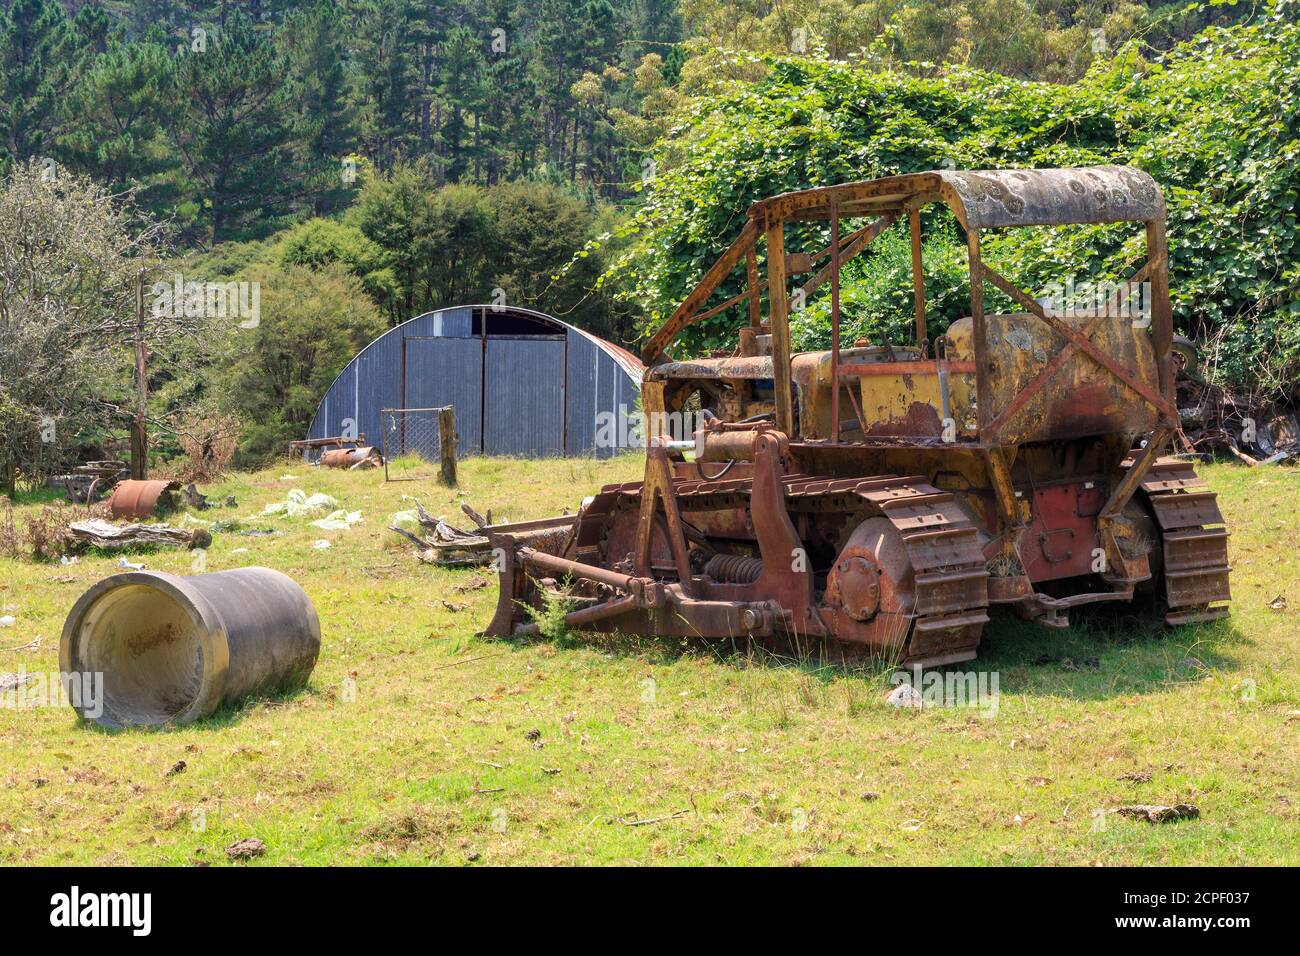 Un vieux bulldozer rouillé, abandonné sur une ferme Banque D'Images